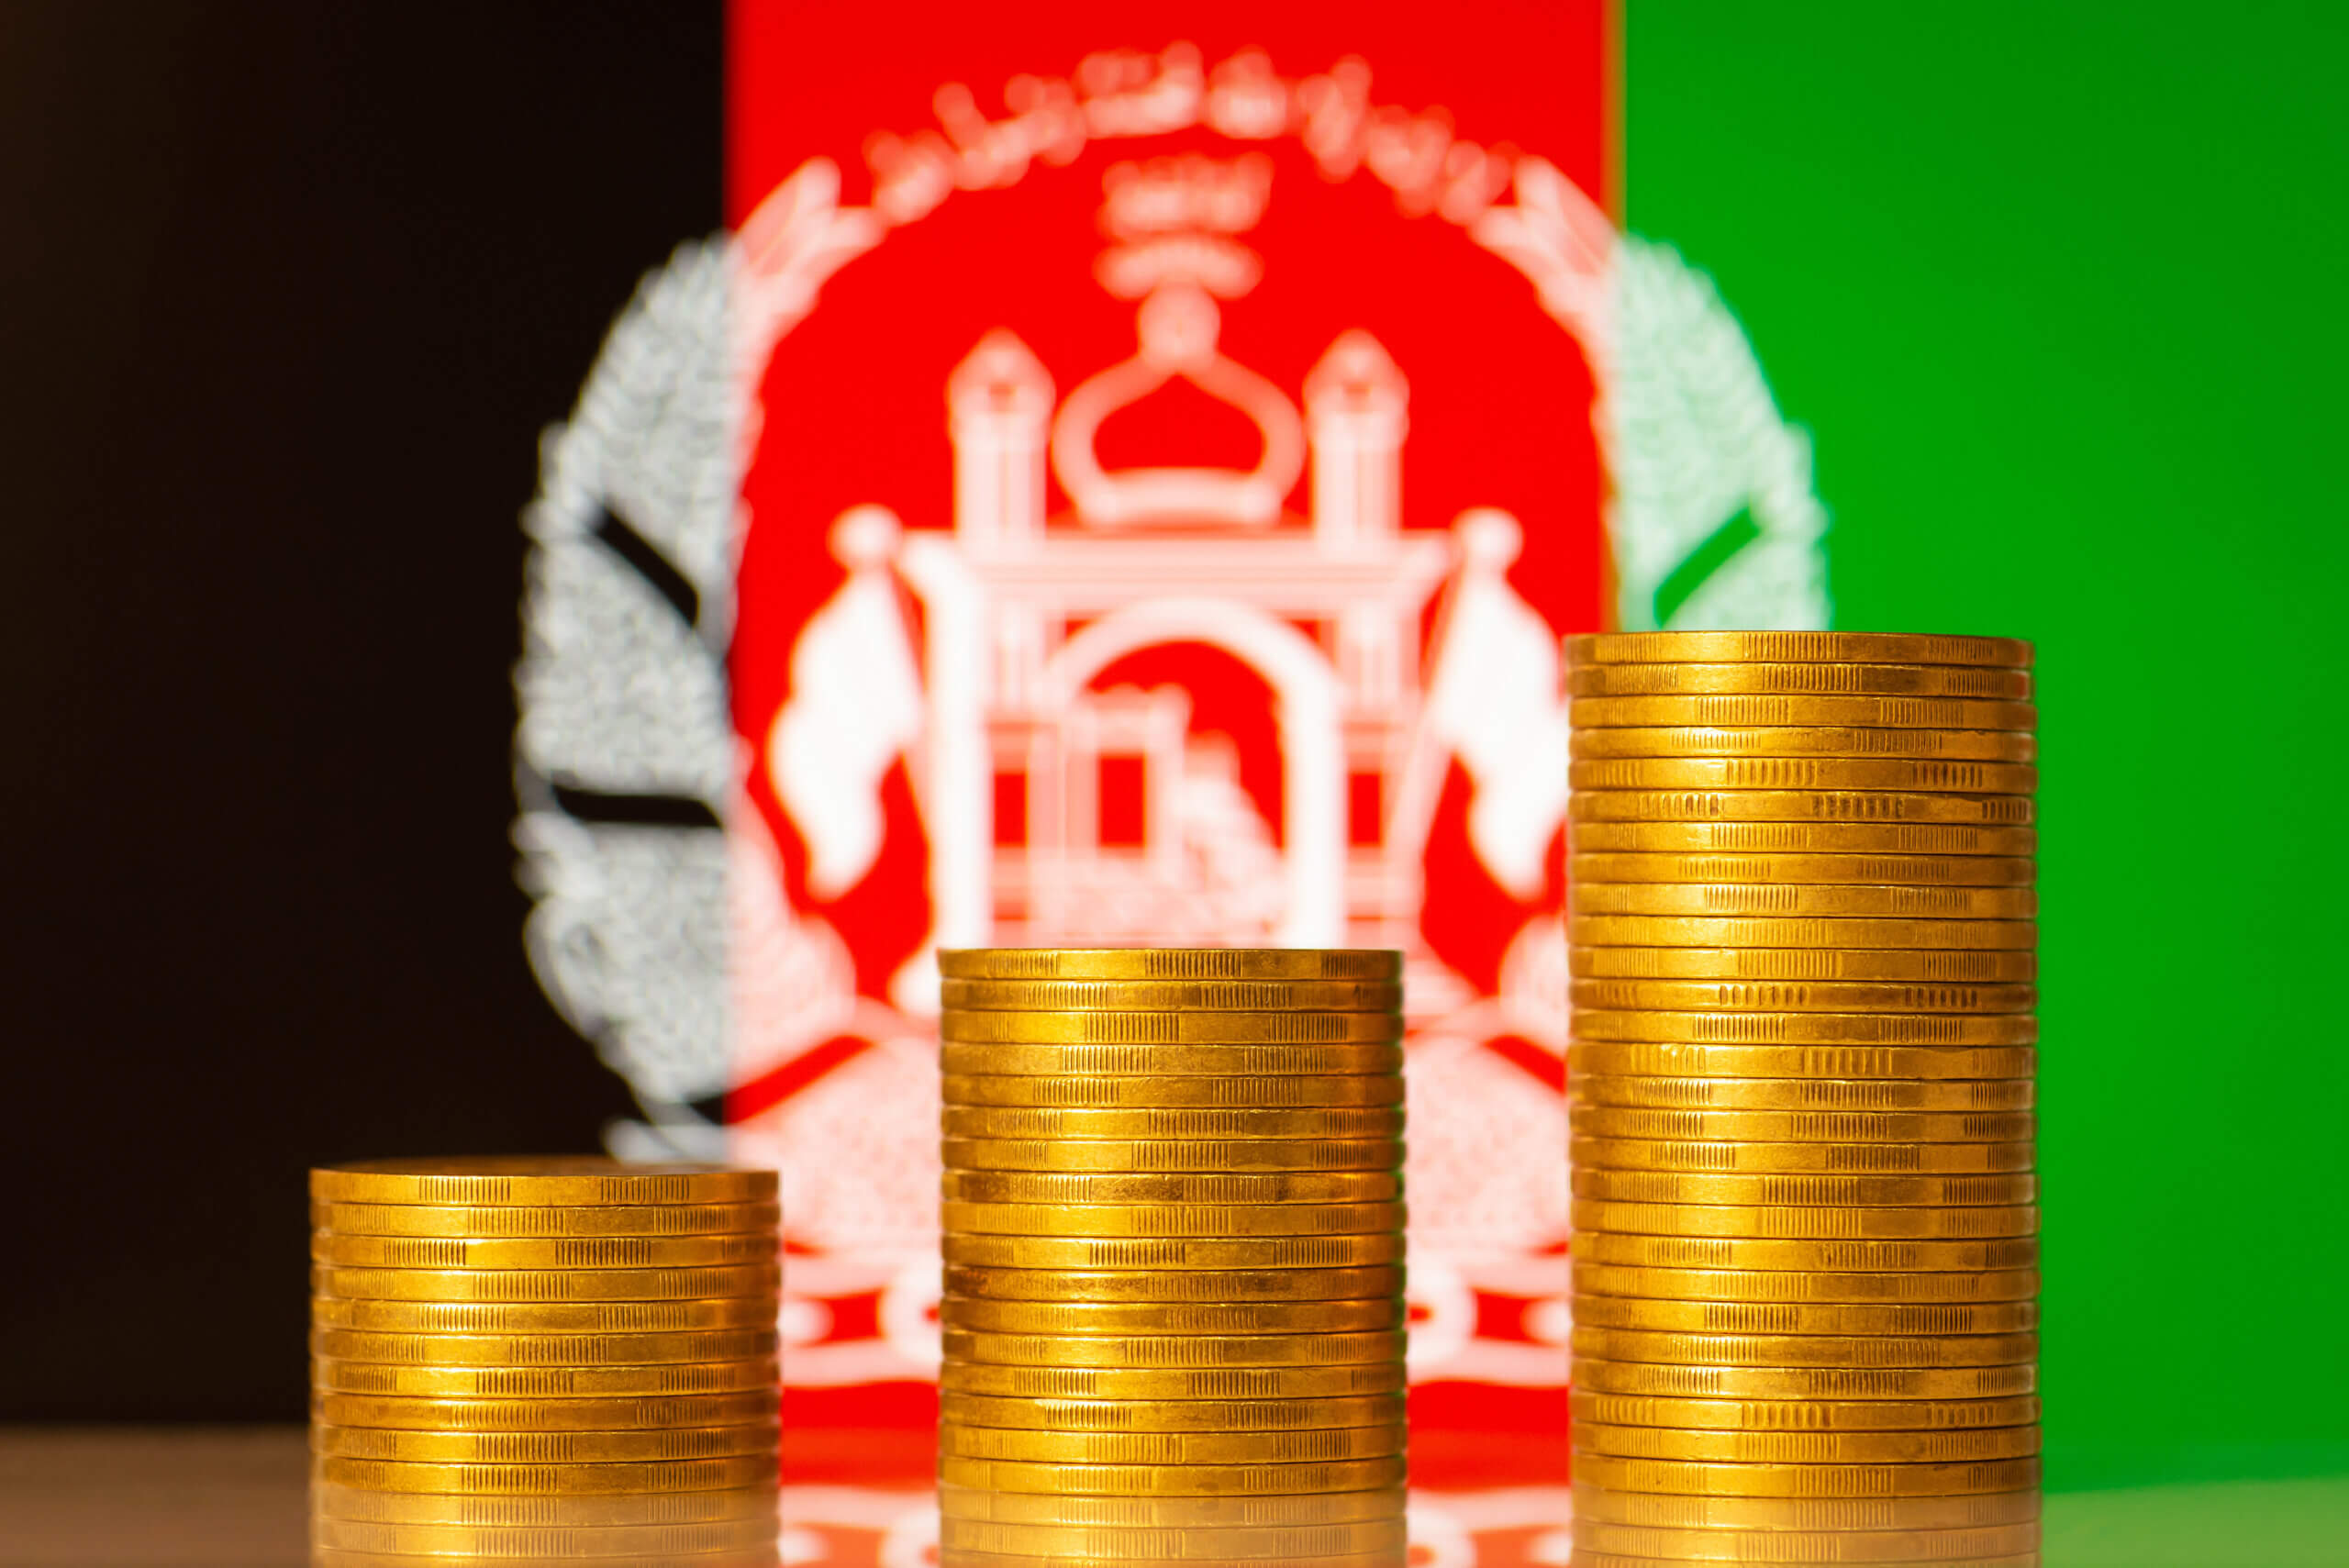 アフガニスタンのアンティークコイン特集 おすすめの金貨・銀貨を紹介